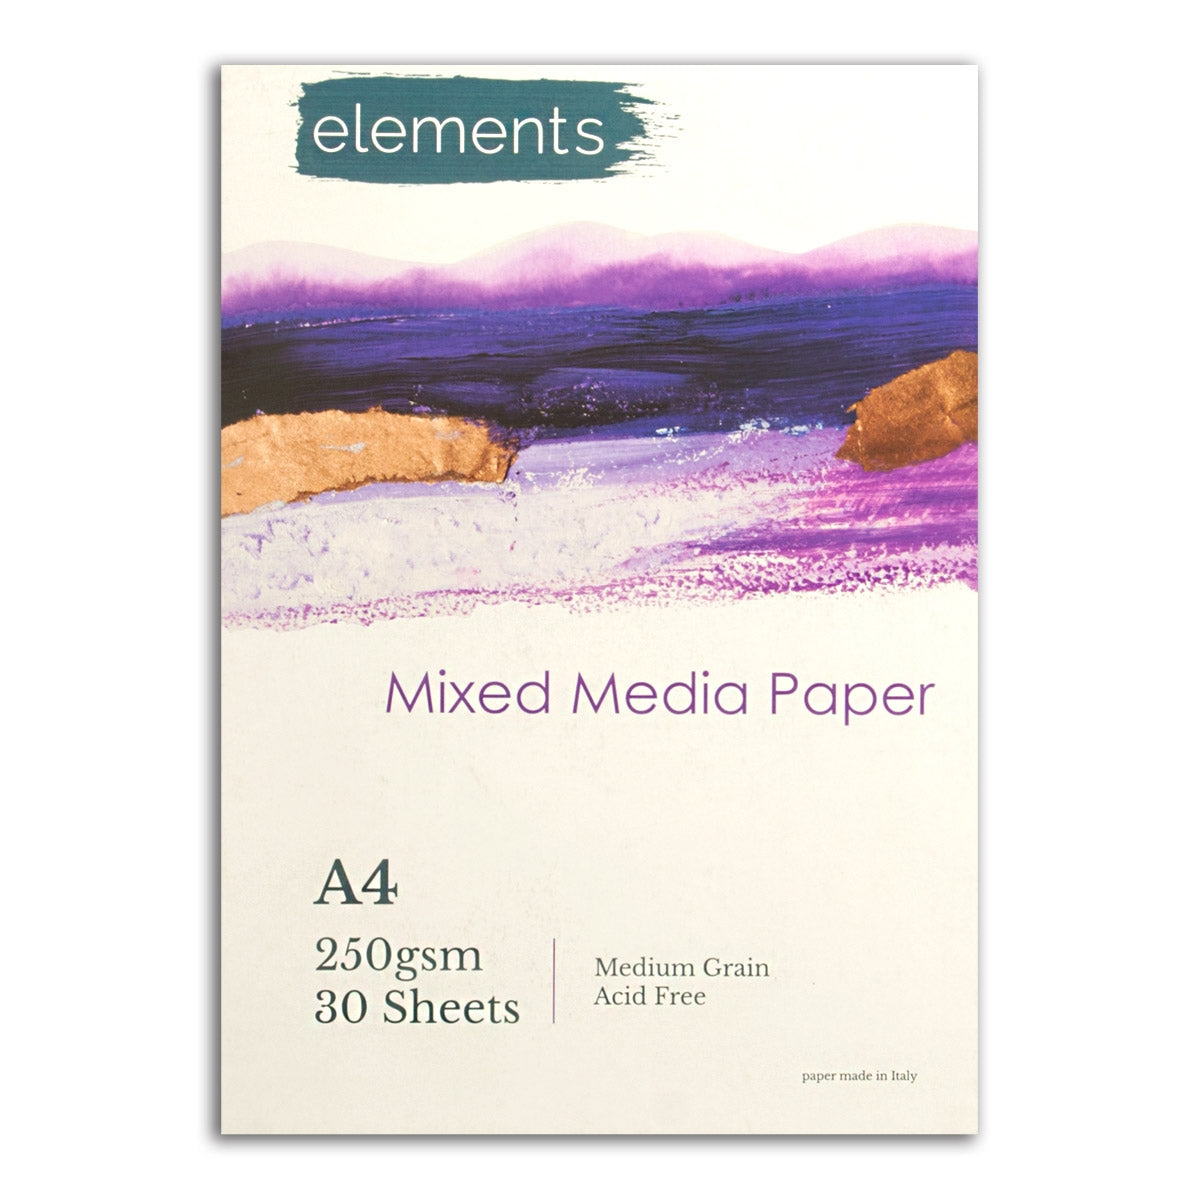 Elements Mixed Media Pad - 250gsm - 30 Sheets - A4